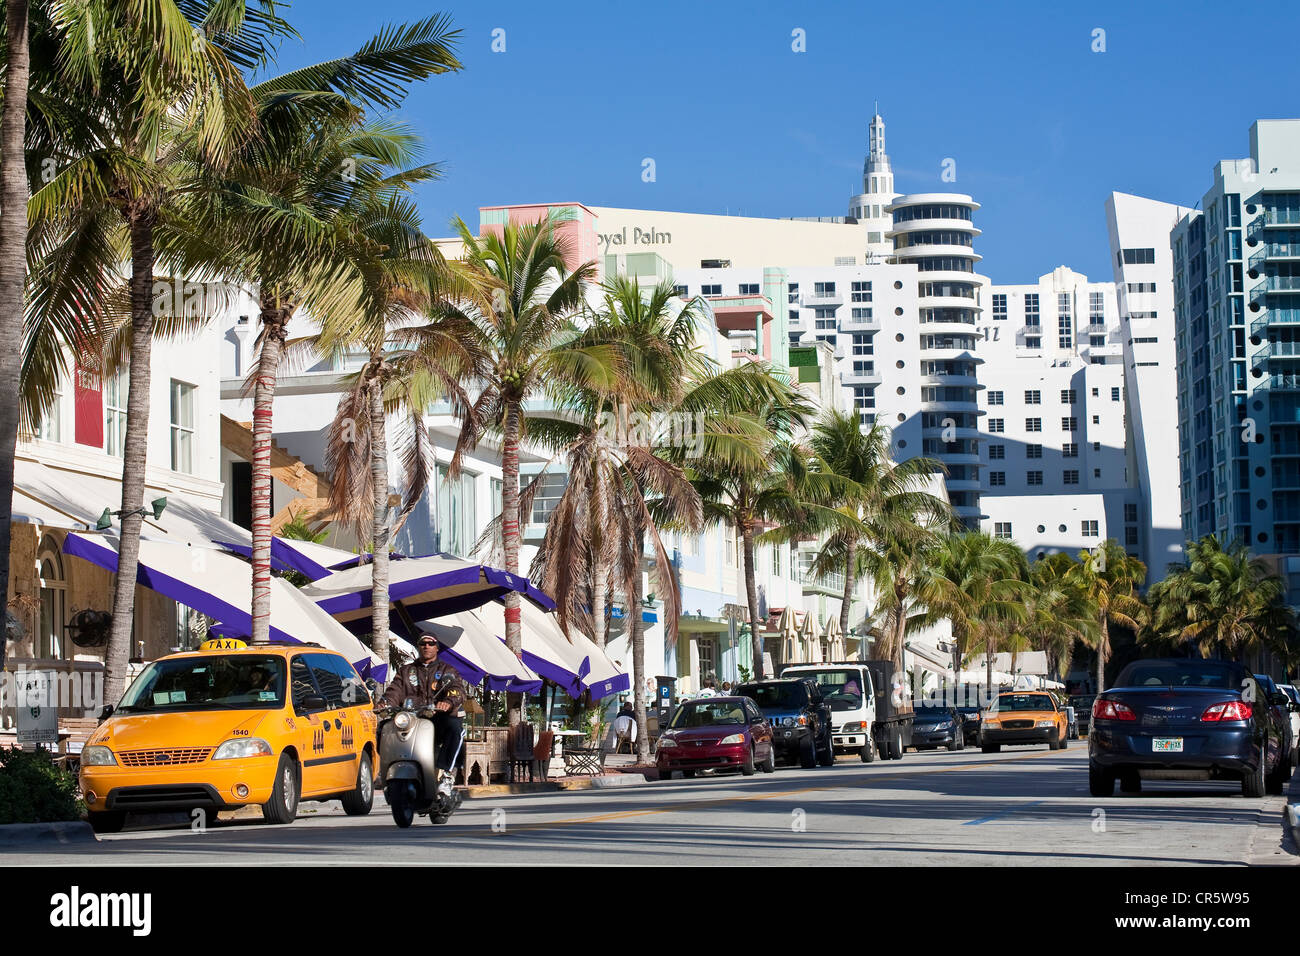 United States, Florida, Miami Beach, South Beach, le quartier Art déco, Ocean Drive, scooter et taxi Banque D'Images